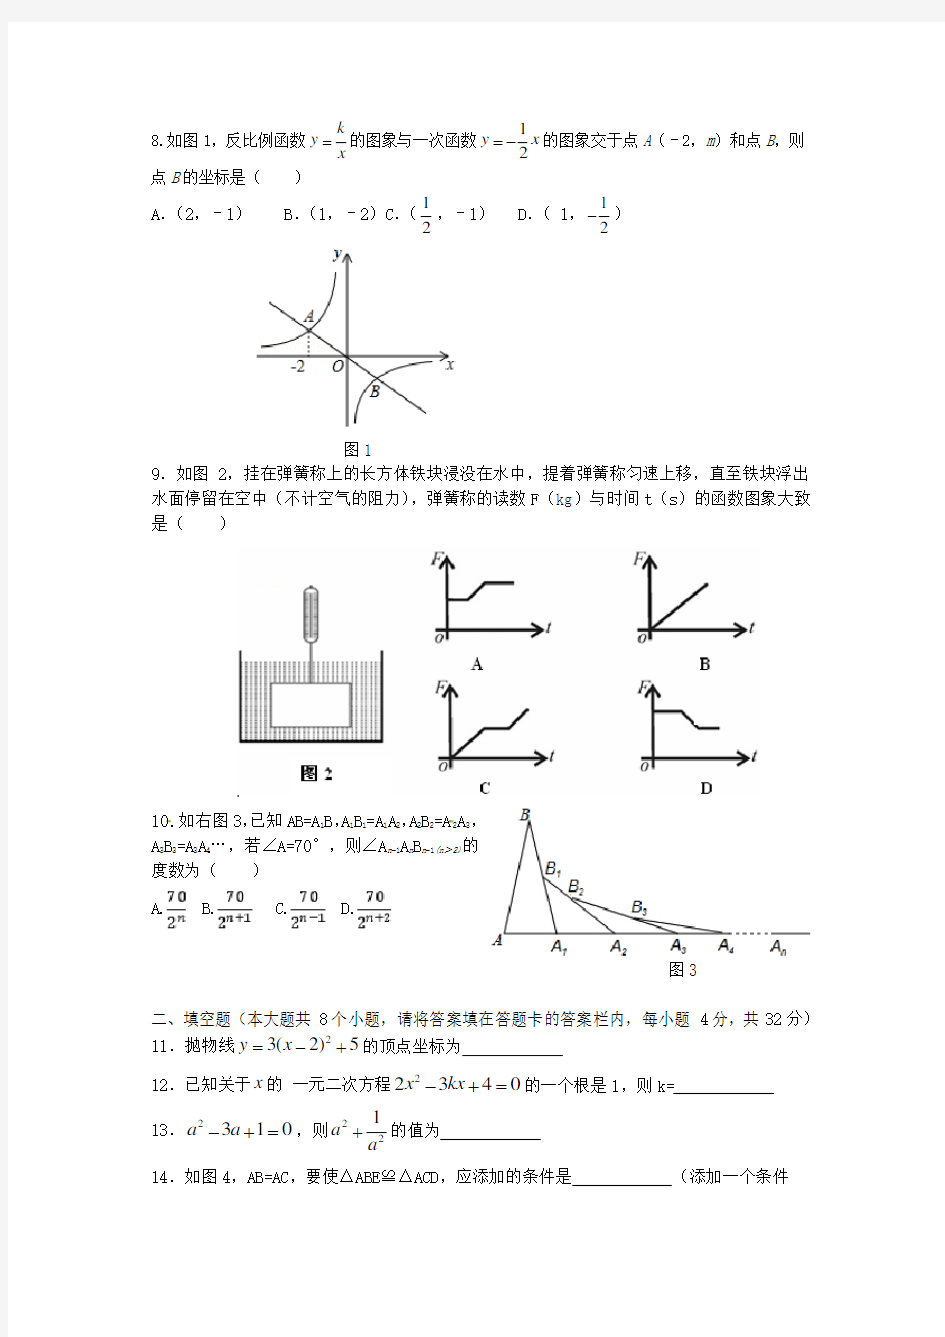 2020年湖南省中考数学模拟试题(含答案)